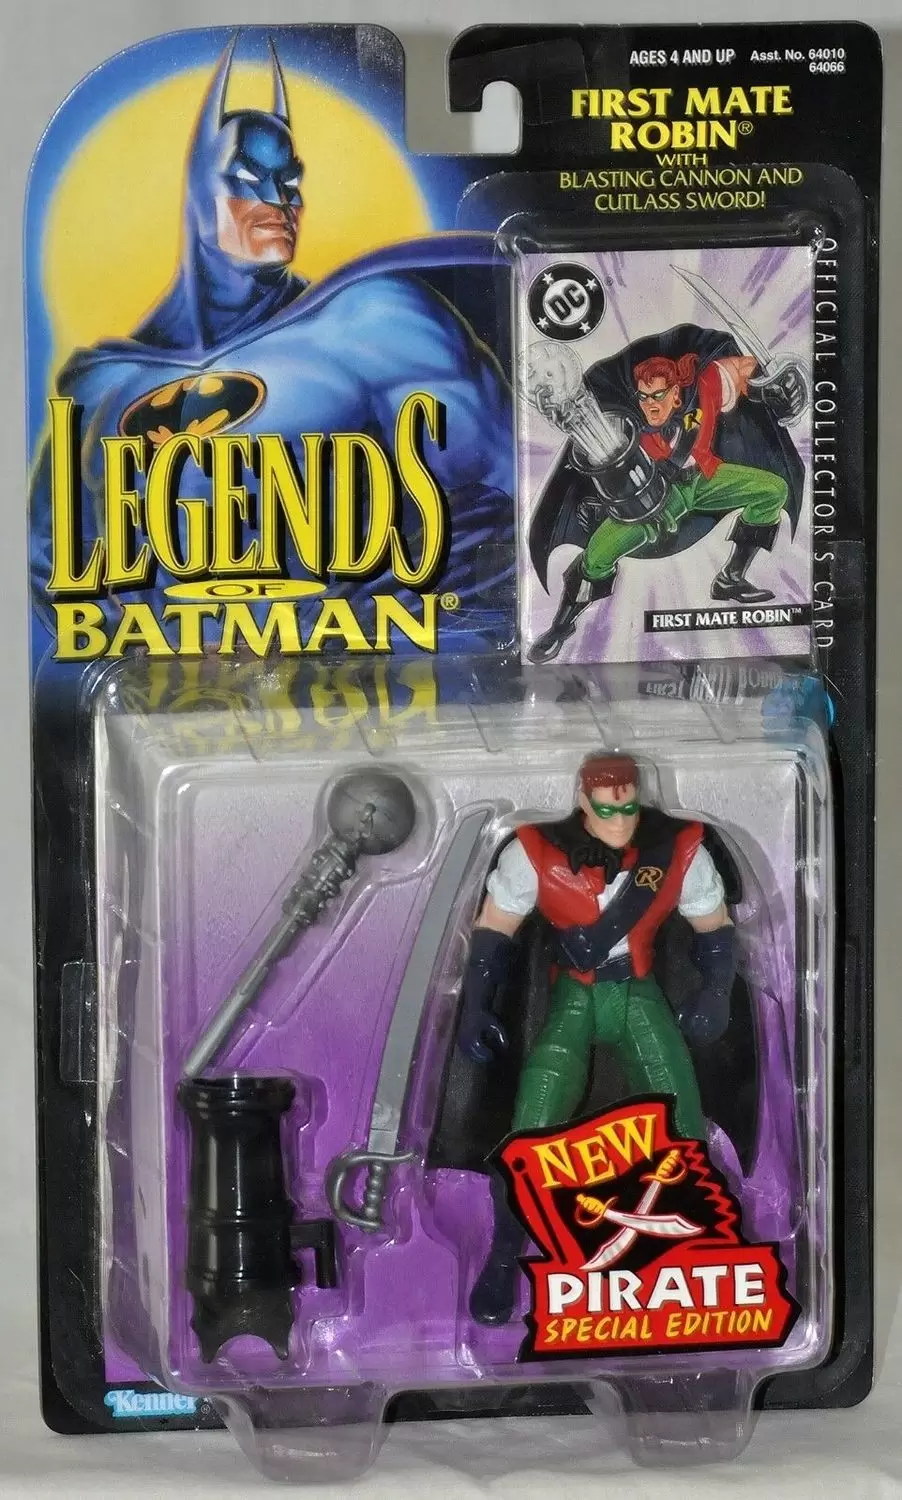 Legends of the Batman - First Mate Robin